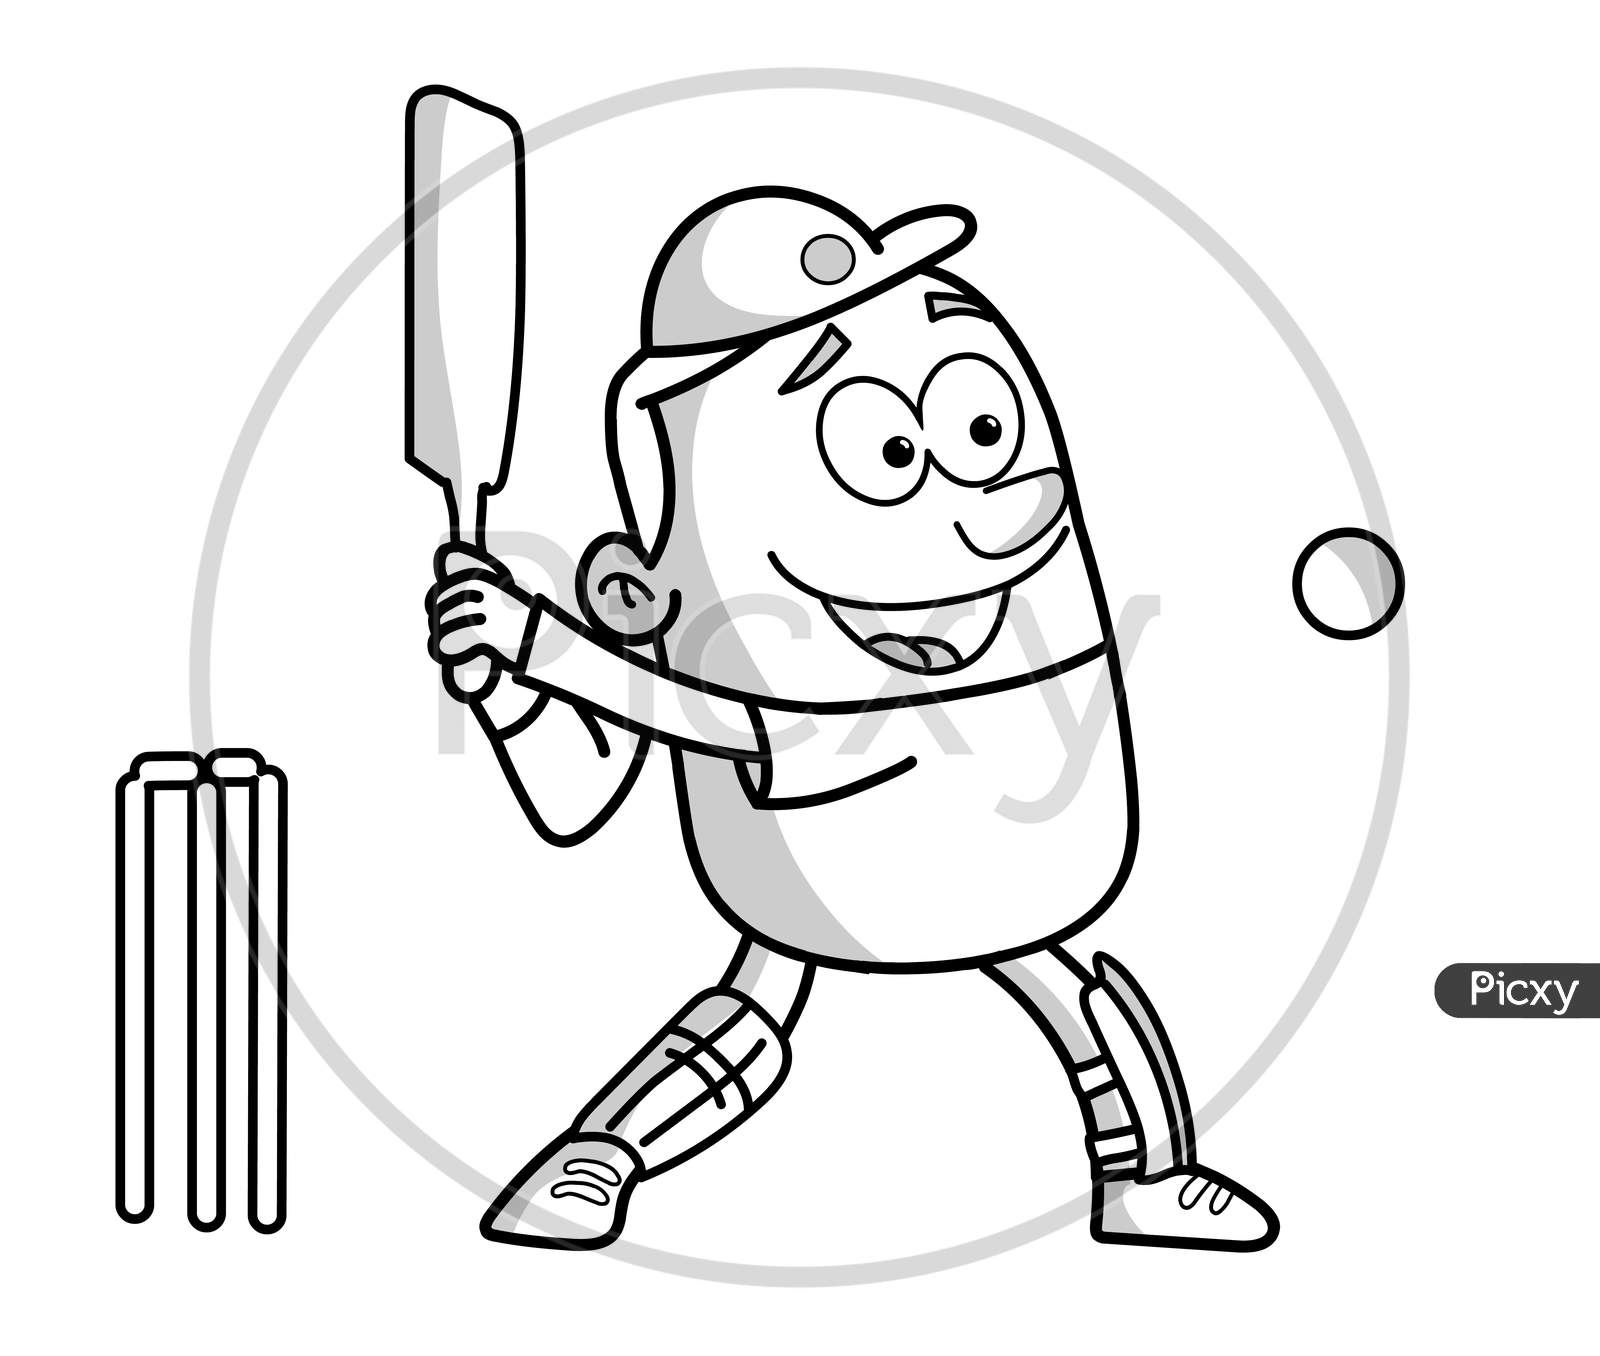 FREE! - Cricket Bat and Ball Colouring Sheet | Colouring Sheet